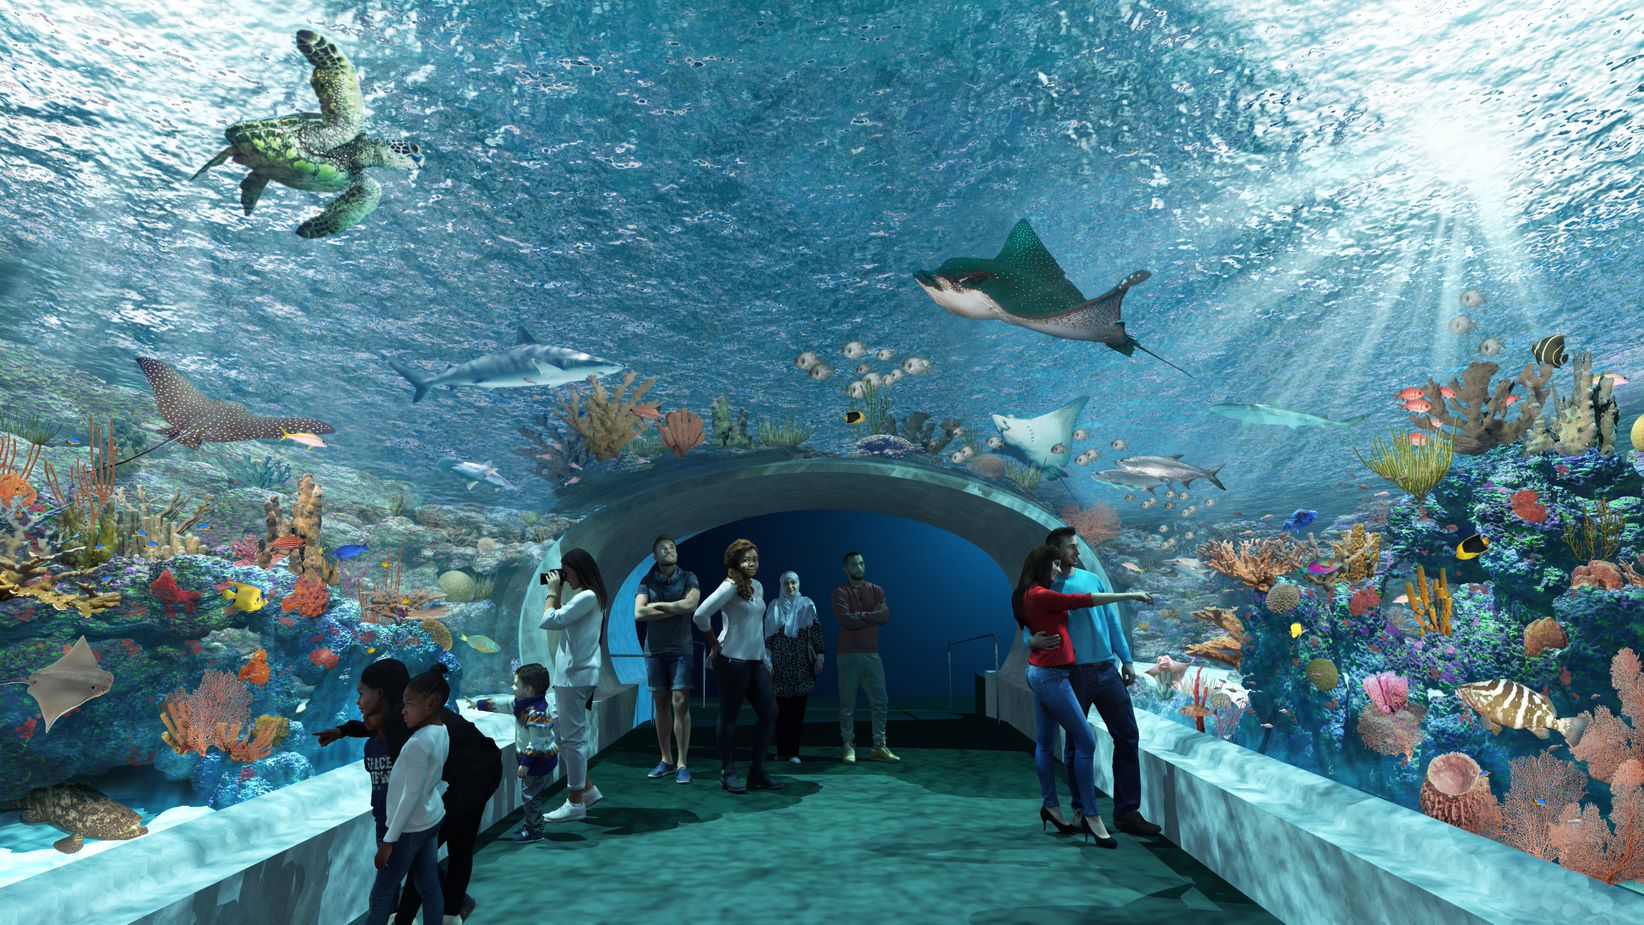 Shedd Aquarium (Chicago, Illinois)